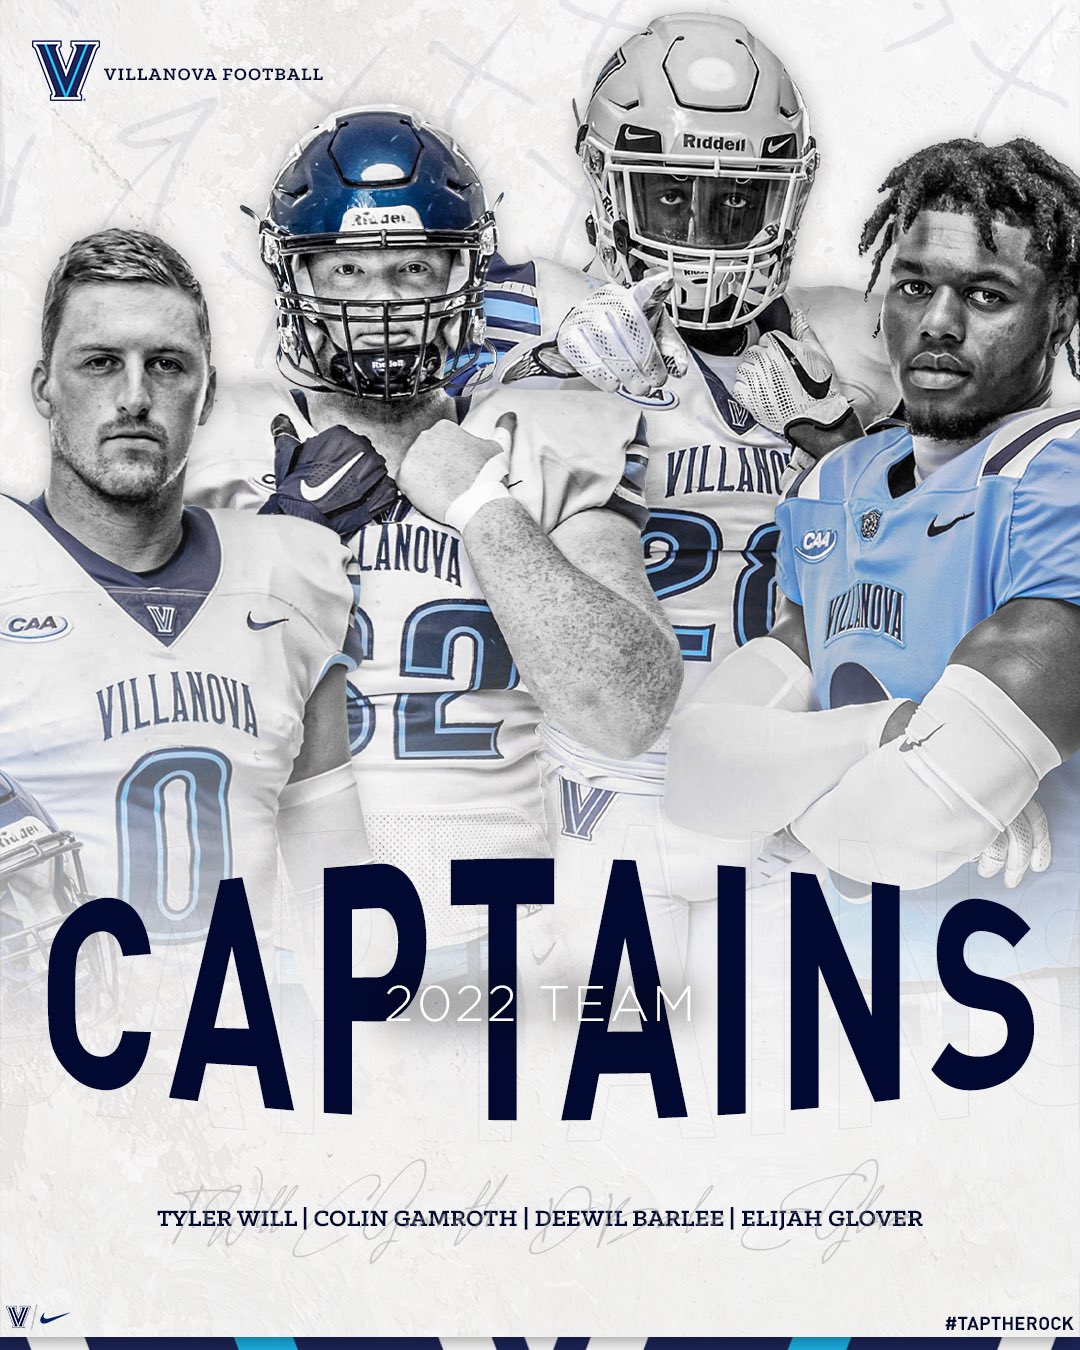 Villanova Football on Twitter "Your 𝟚𝟘𝟚𝟚 Team Captains. https//t.co